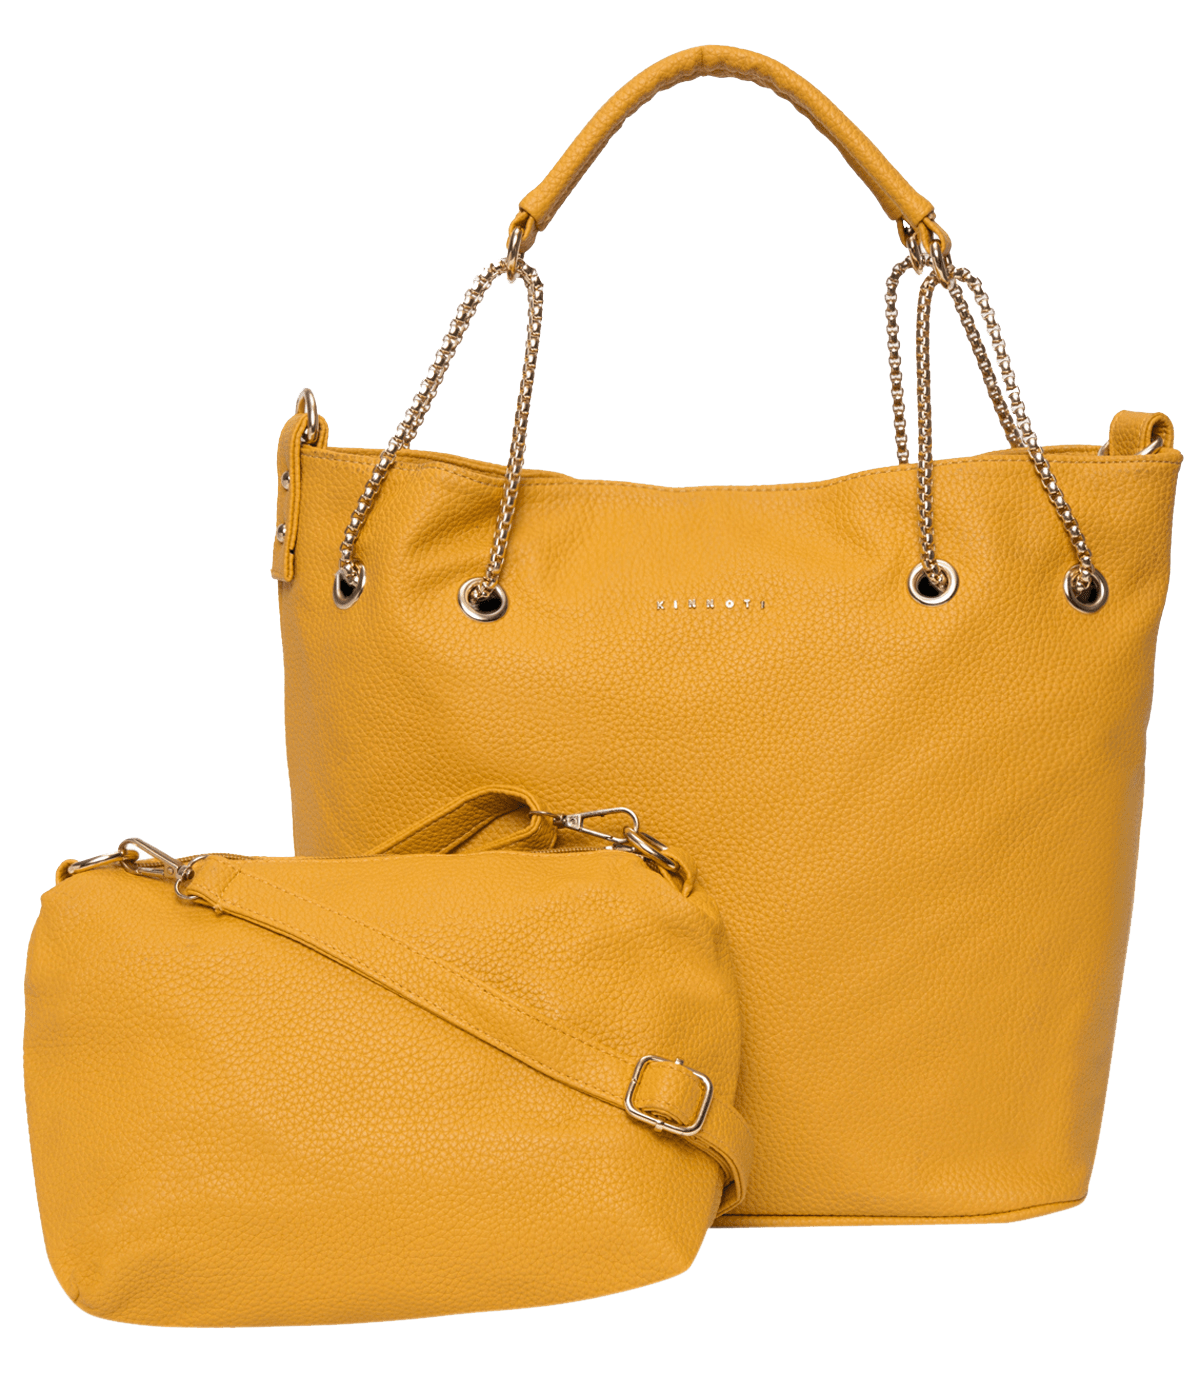 kinnoti Vegan Tote Bag Yellow Chain Tote Bag